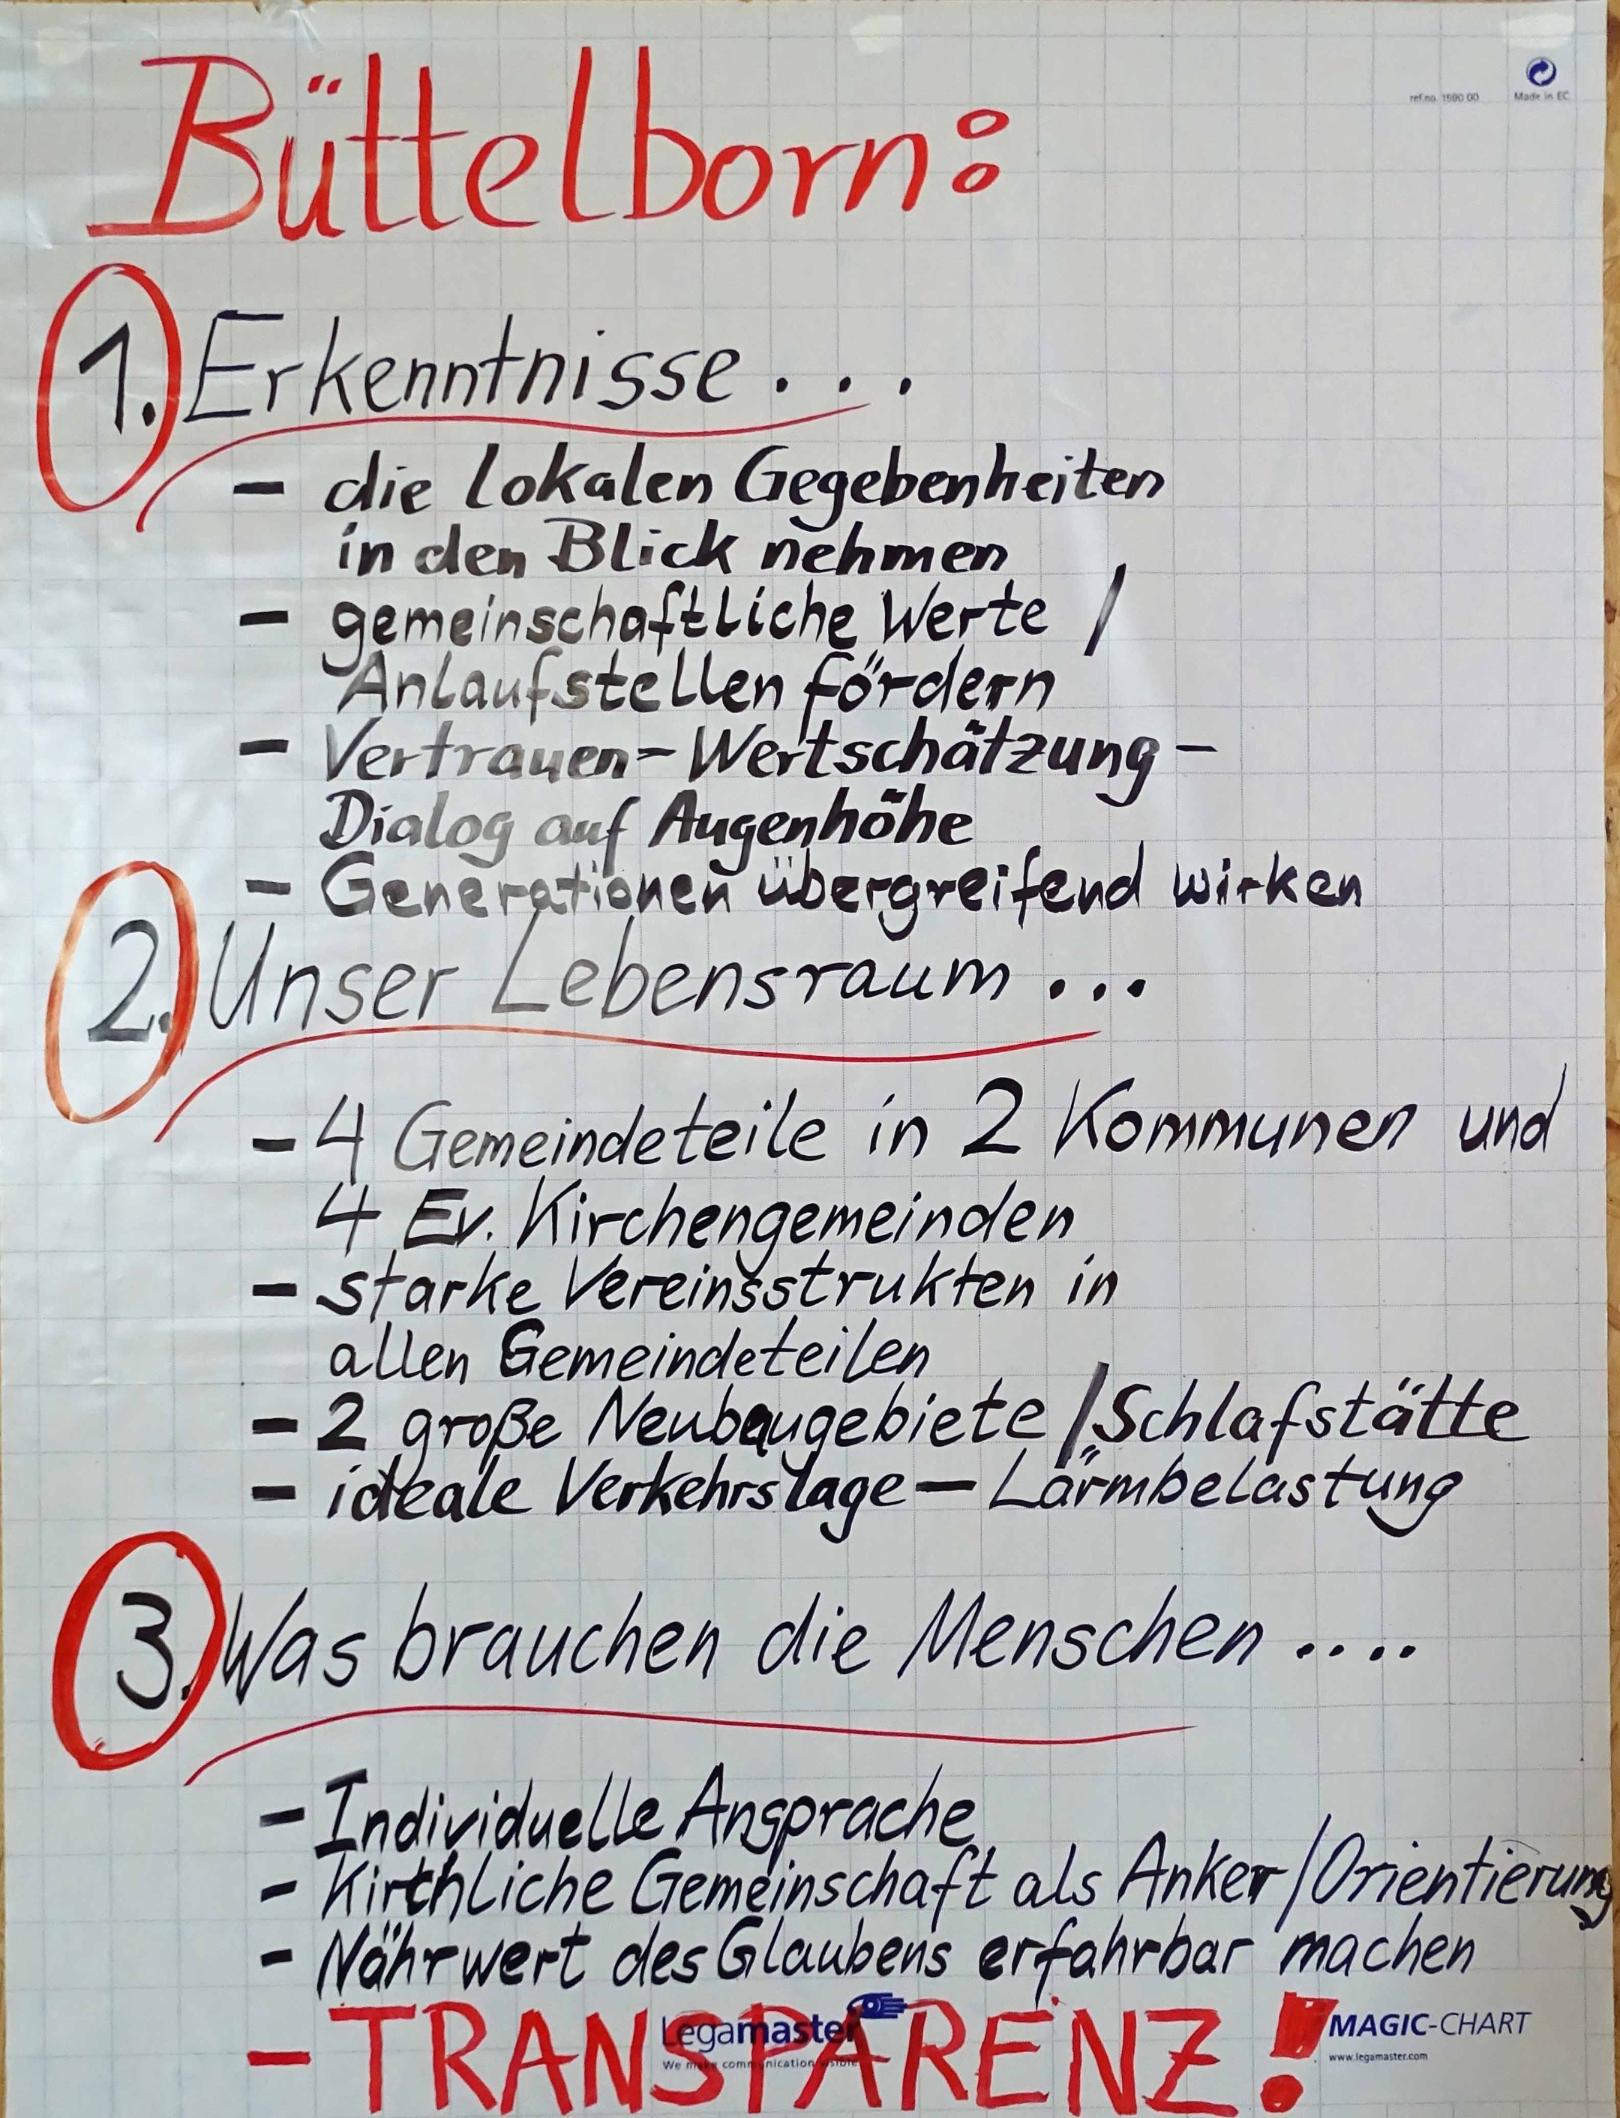 Erkenntnisse der Gesellschaftlichen Wahrnemung - Pfarrei St. Nikolaus von der Flüe Büttelborn (c) Markus Schenk